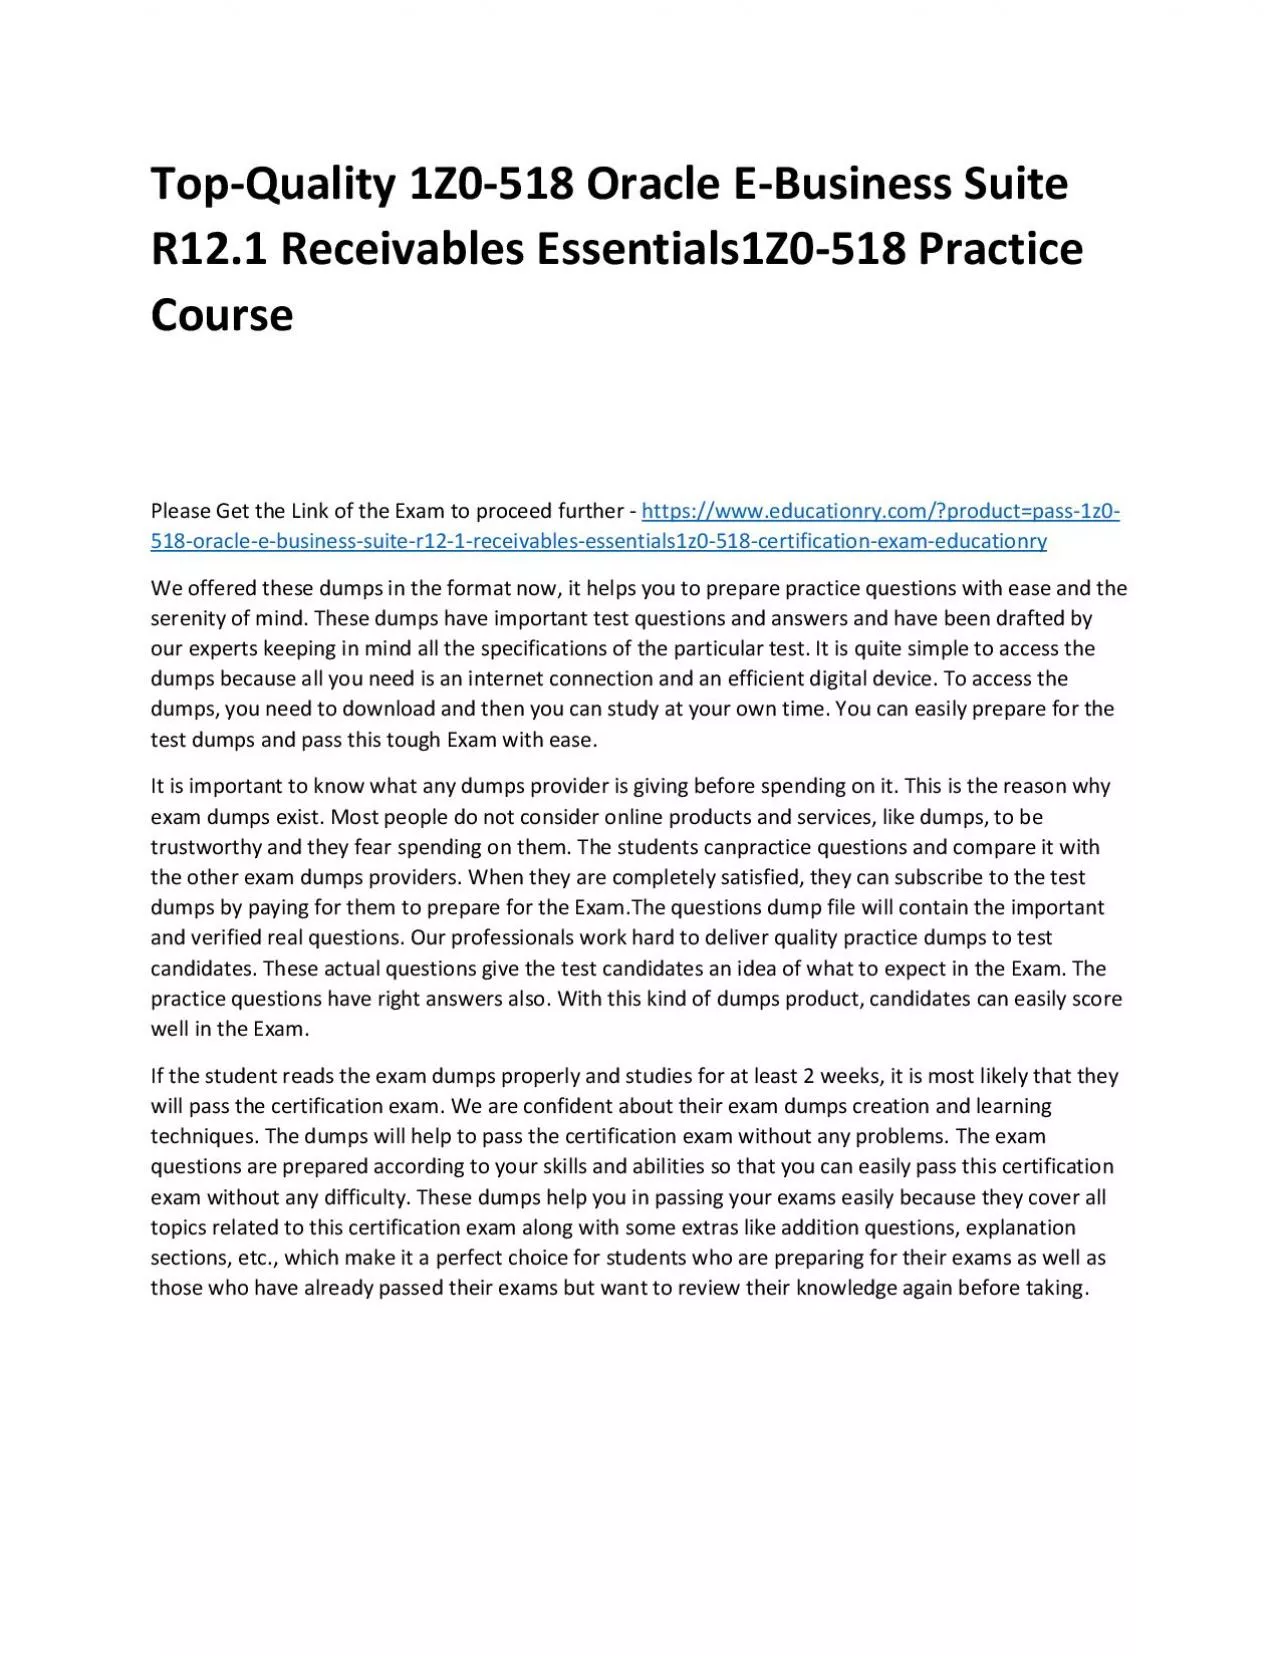 Top-Quality 1Z0-518 Oracle E-Business Suite R12.1 Receivables Essentials1Z0-518 Practice